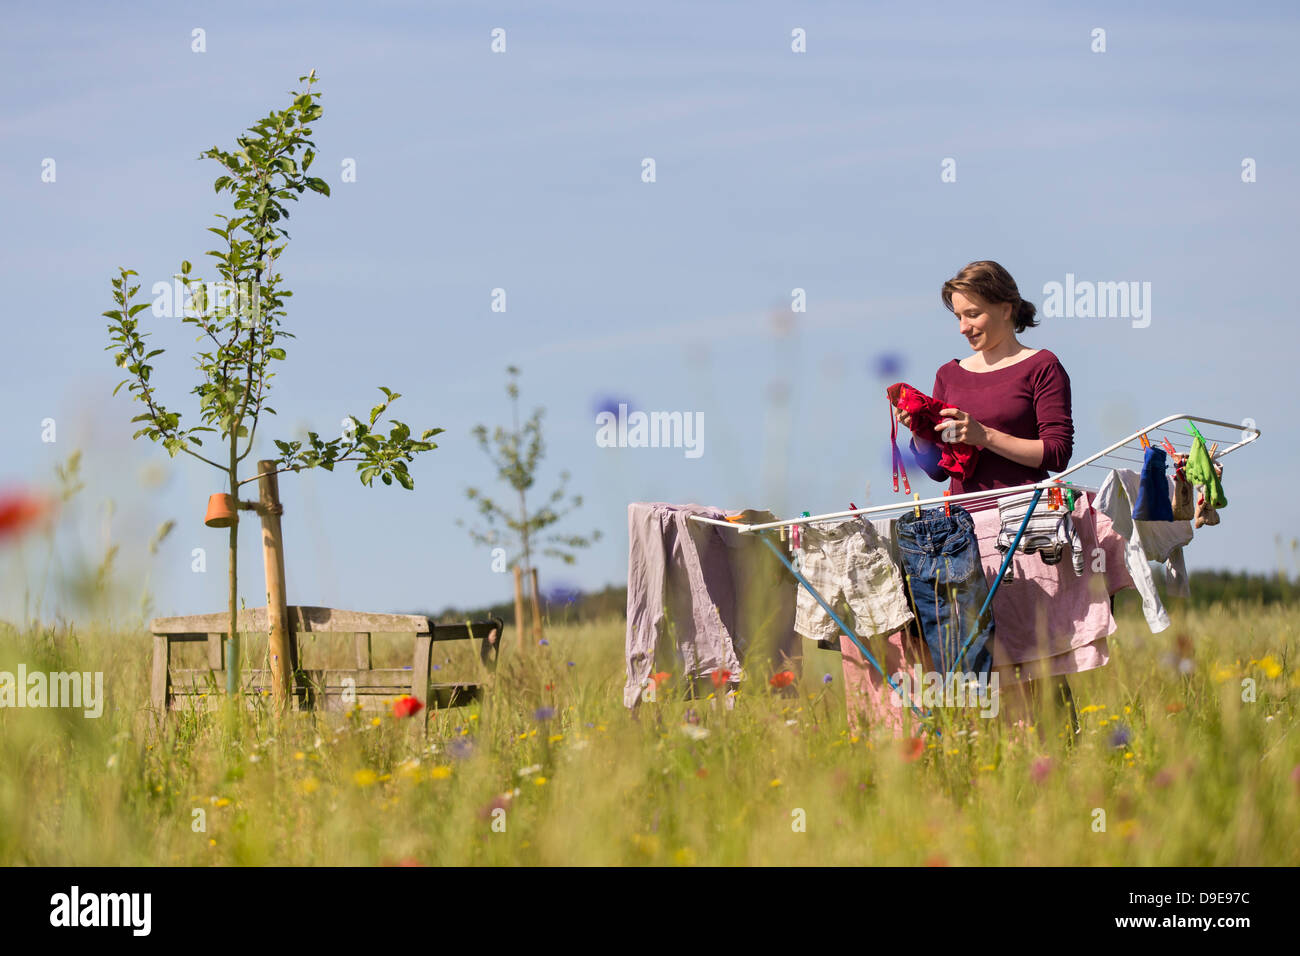 Mujer joven de colgar la ropa de lavandería en un caballo en un jardín rural Foto de stock